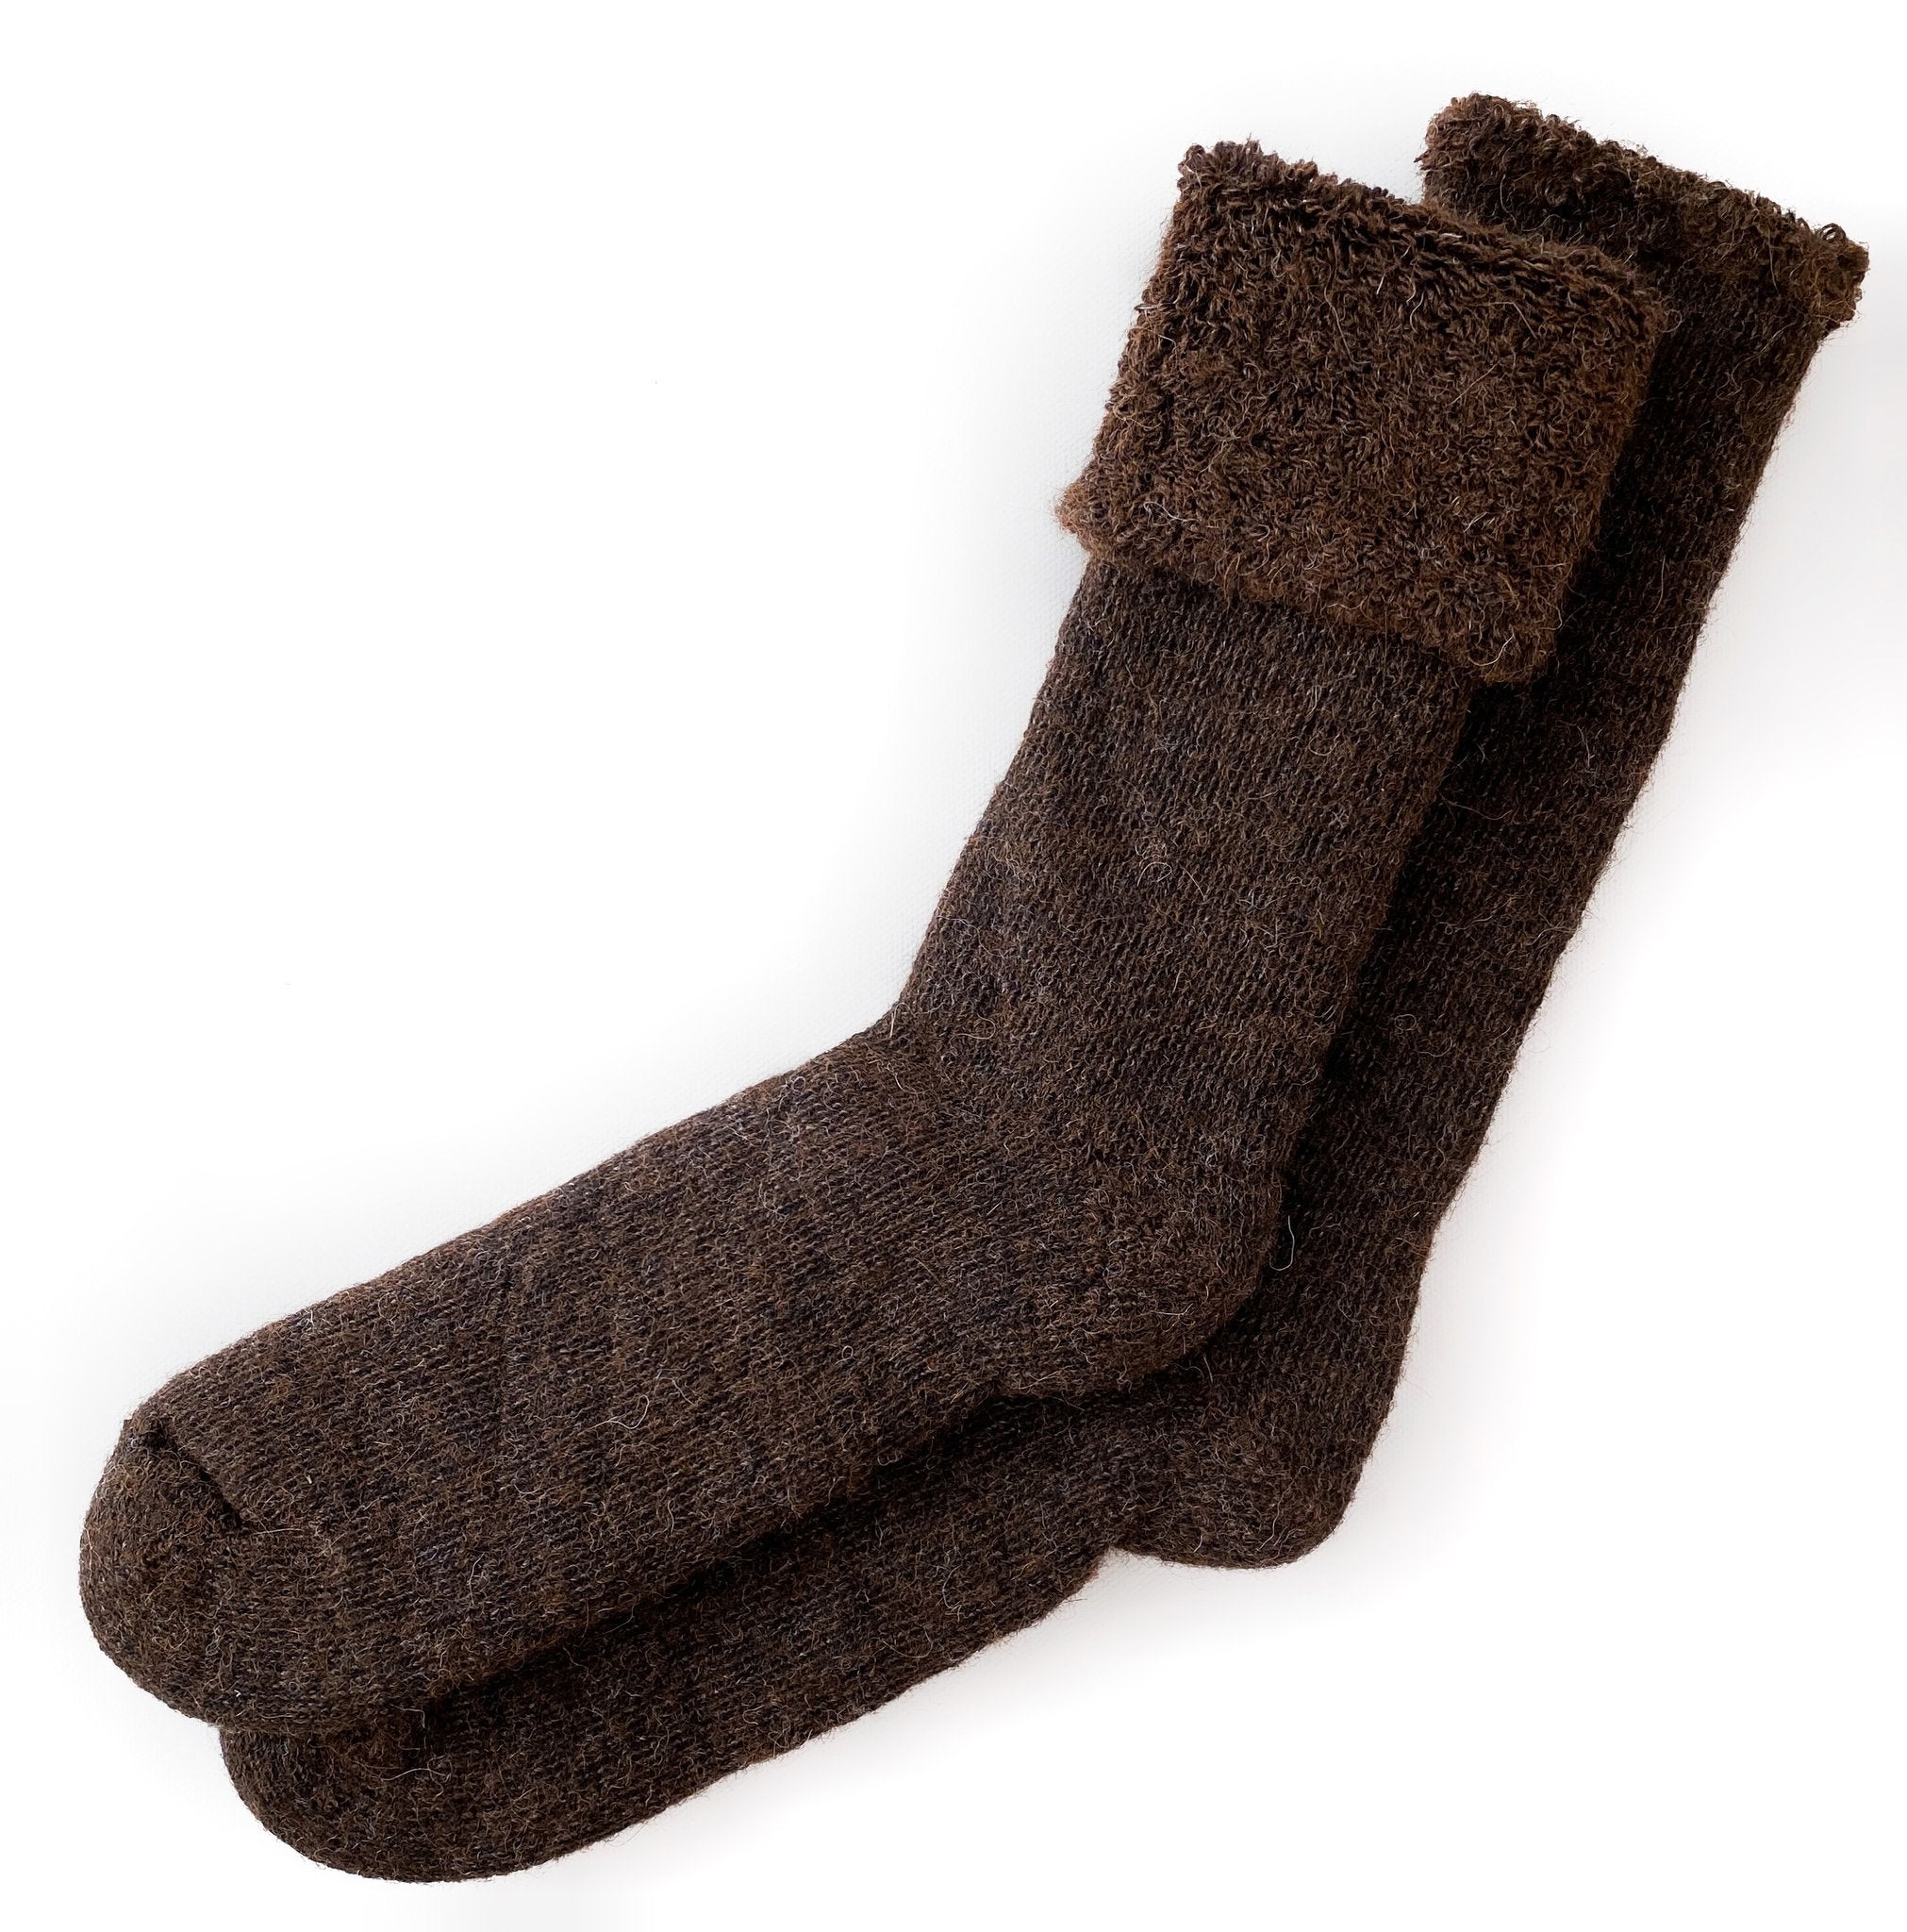 Alpaca Socks & Insoles, Shop